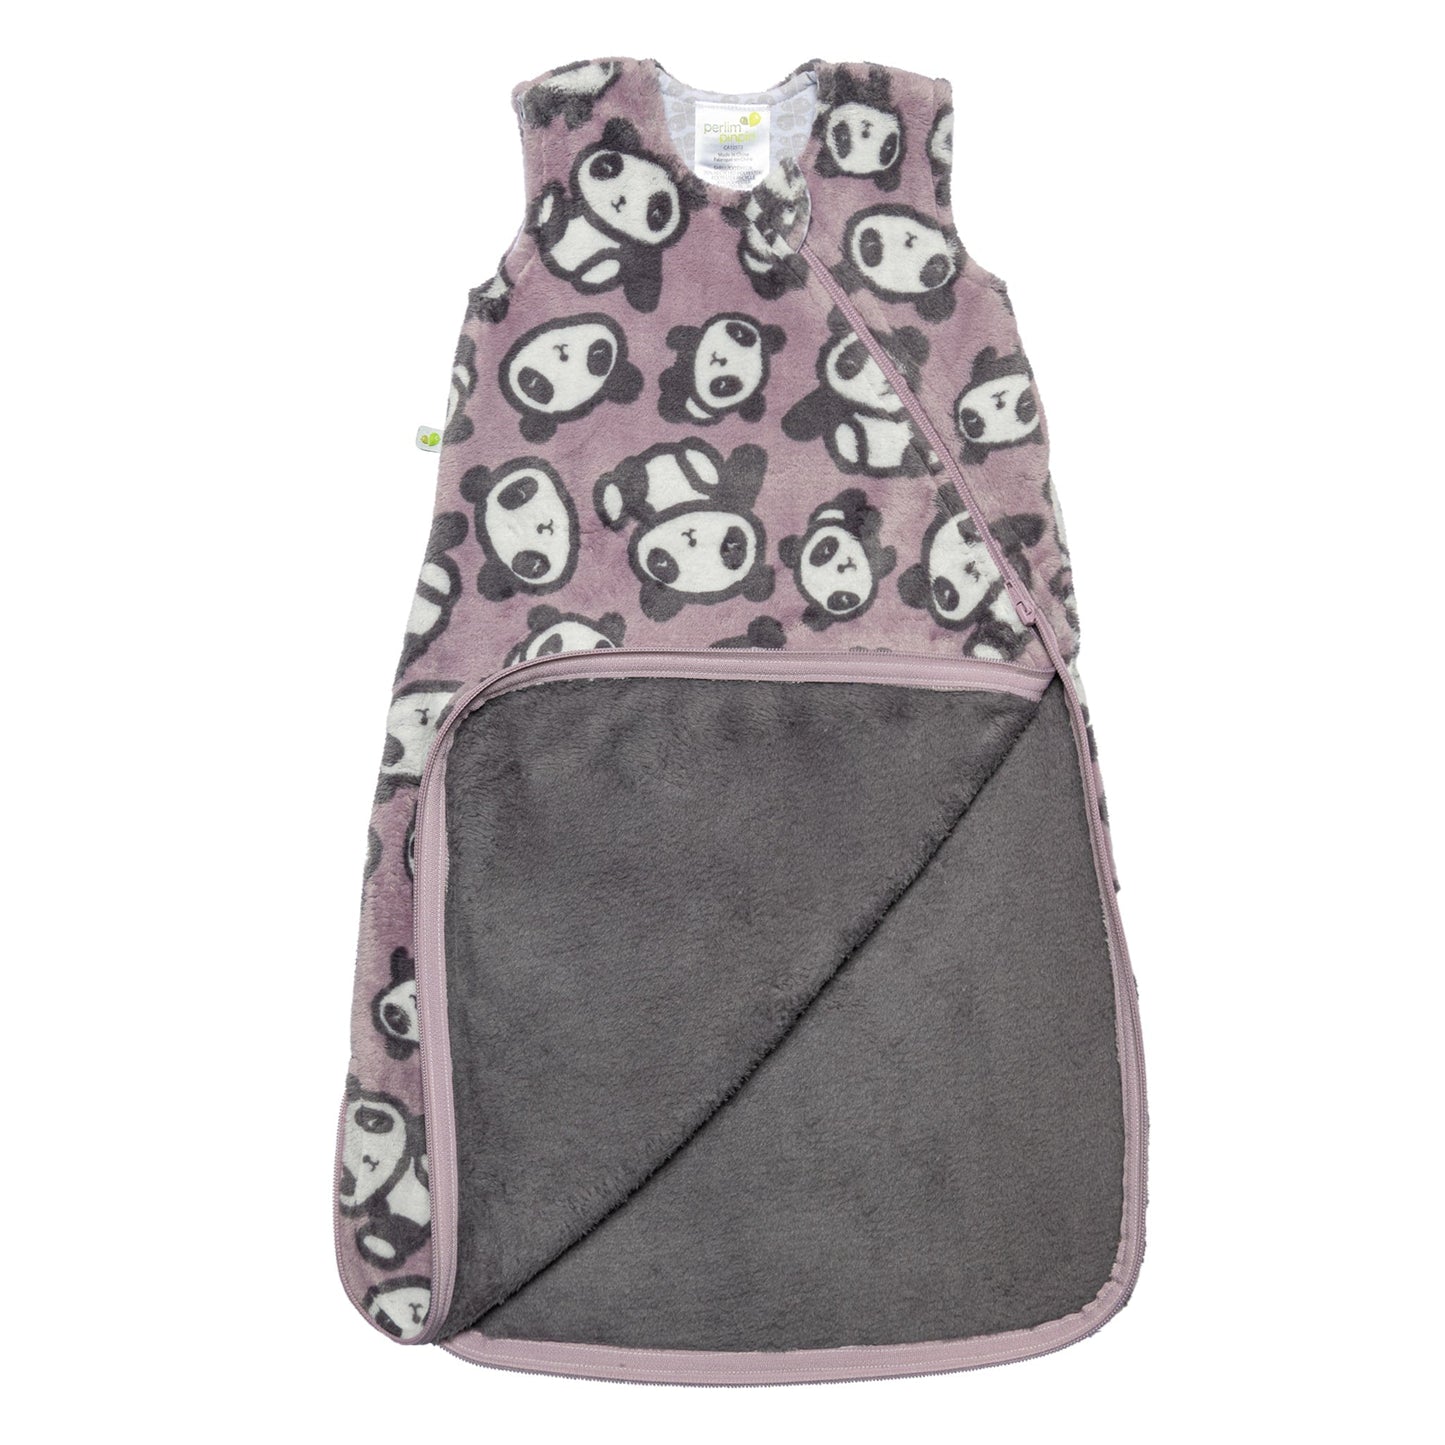 Plush sleep bag - Pandas (1.5 Togs)